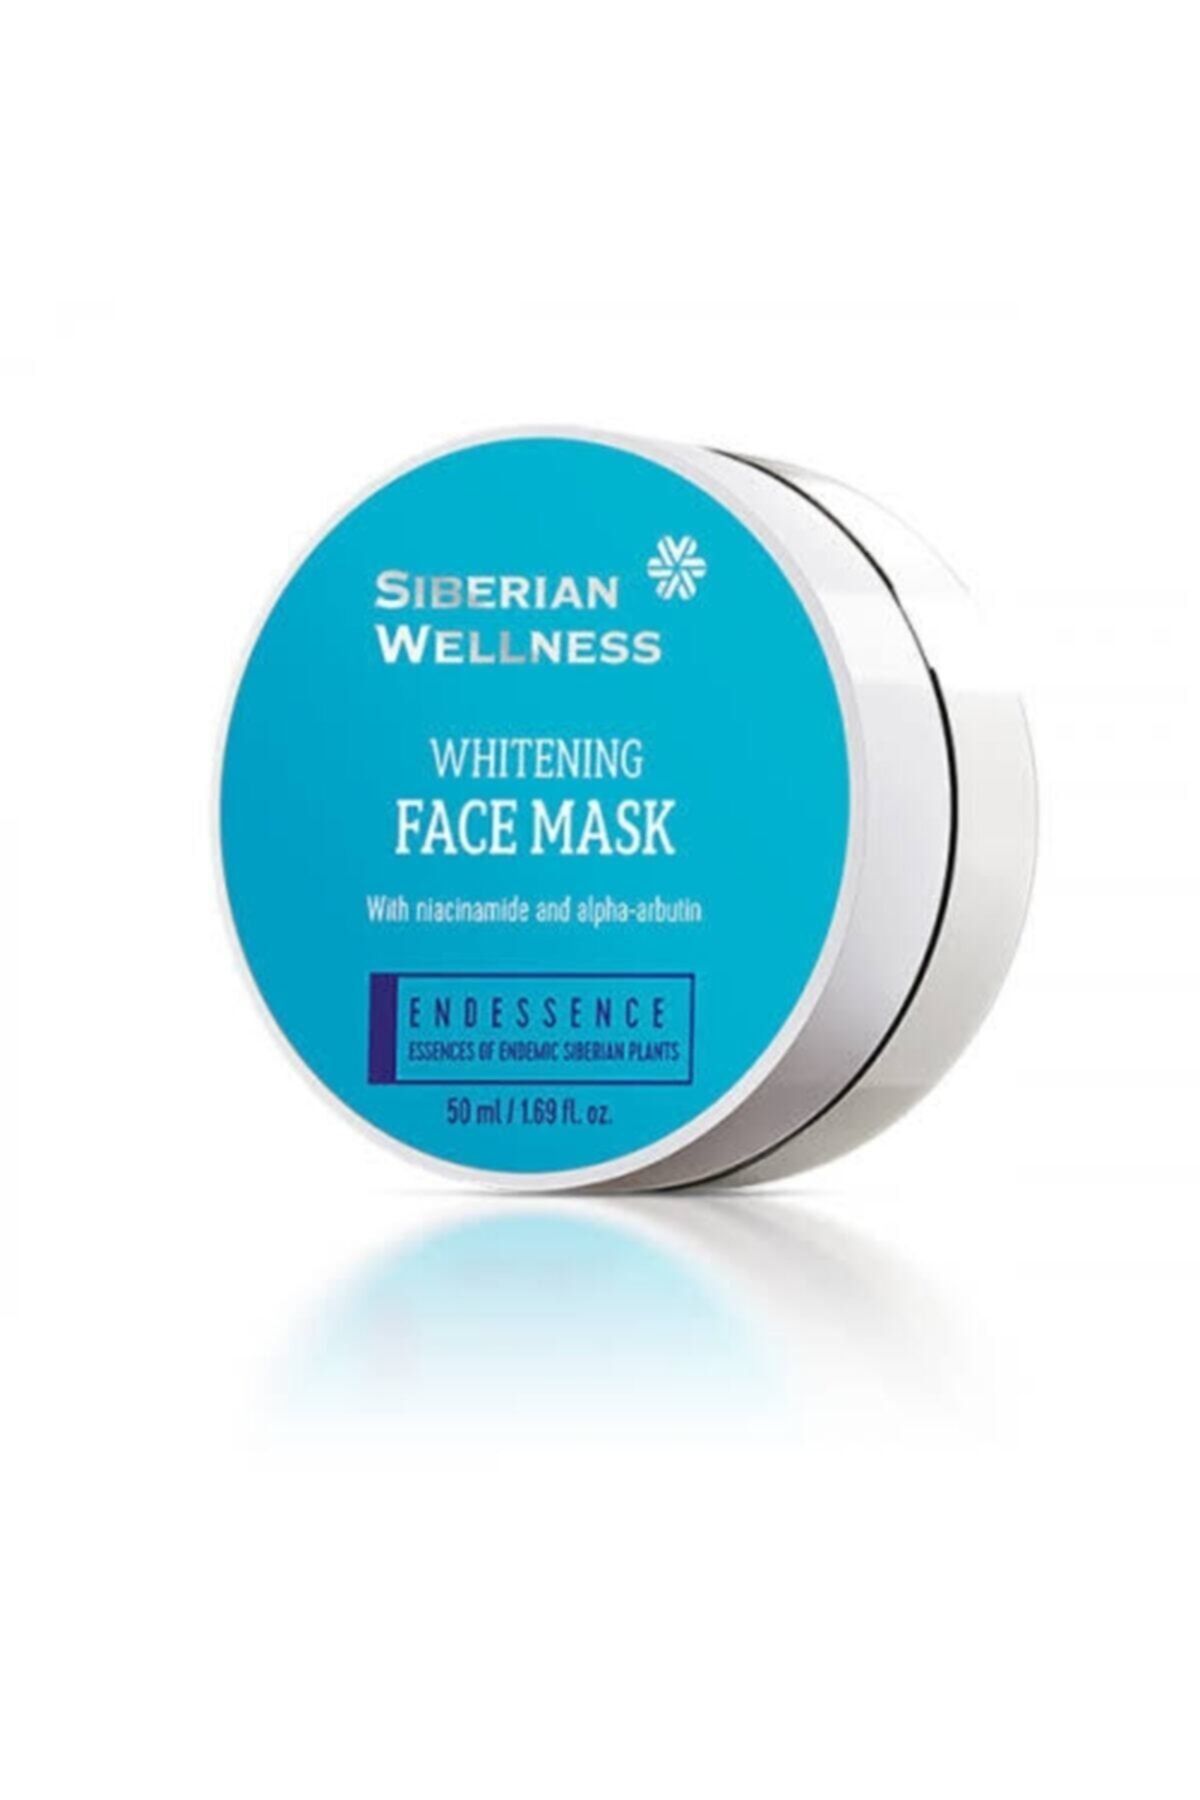 Siberian Wellness Whıtenıng Face Mask Endemıx 50 Ml Whıtenıng Face Mask - Endemıx 50 Ml